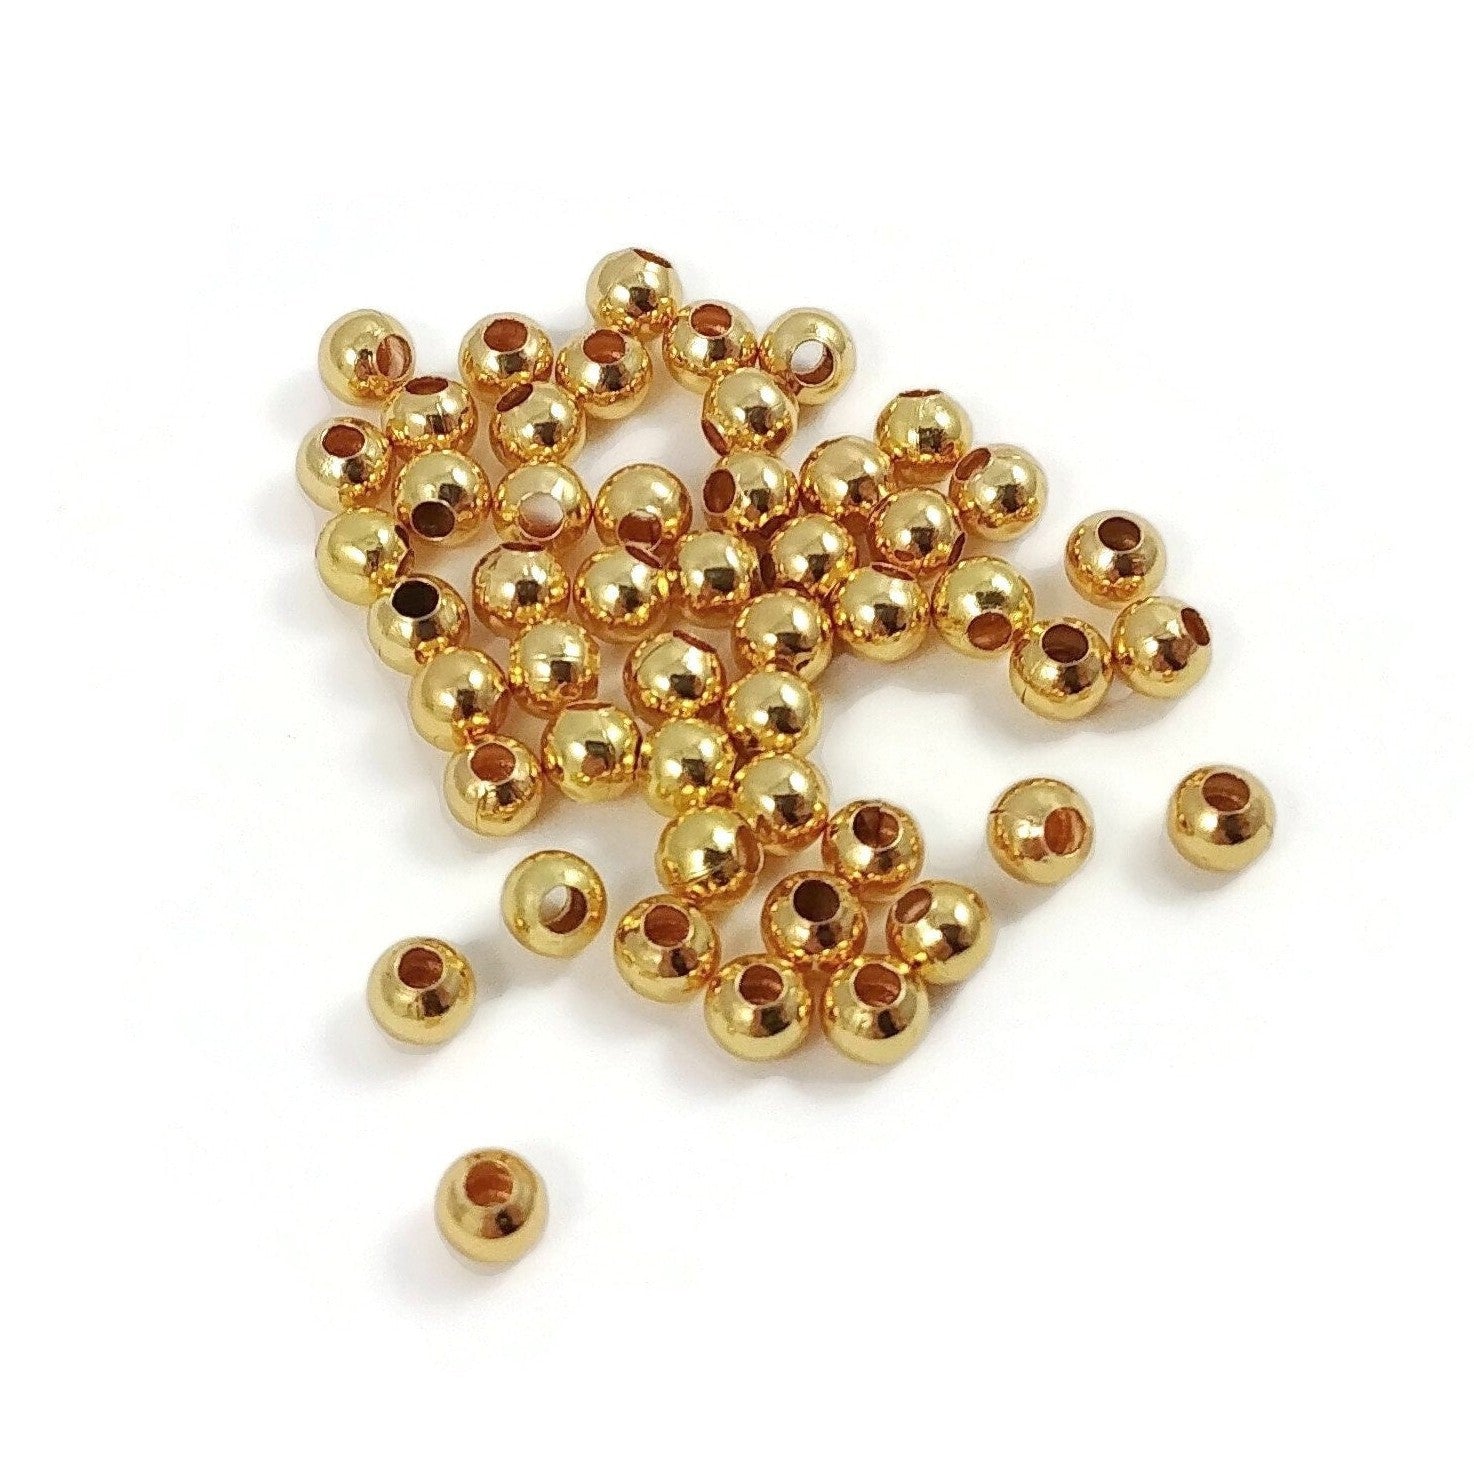 Hypoallergenic metal beads